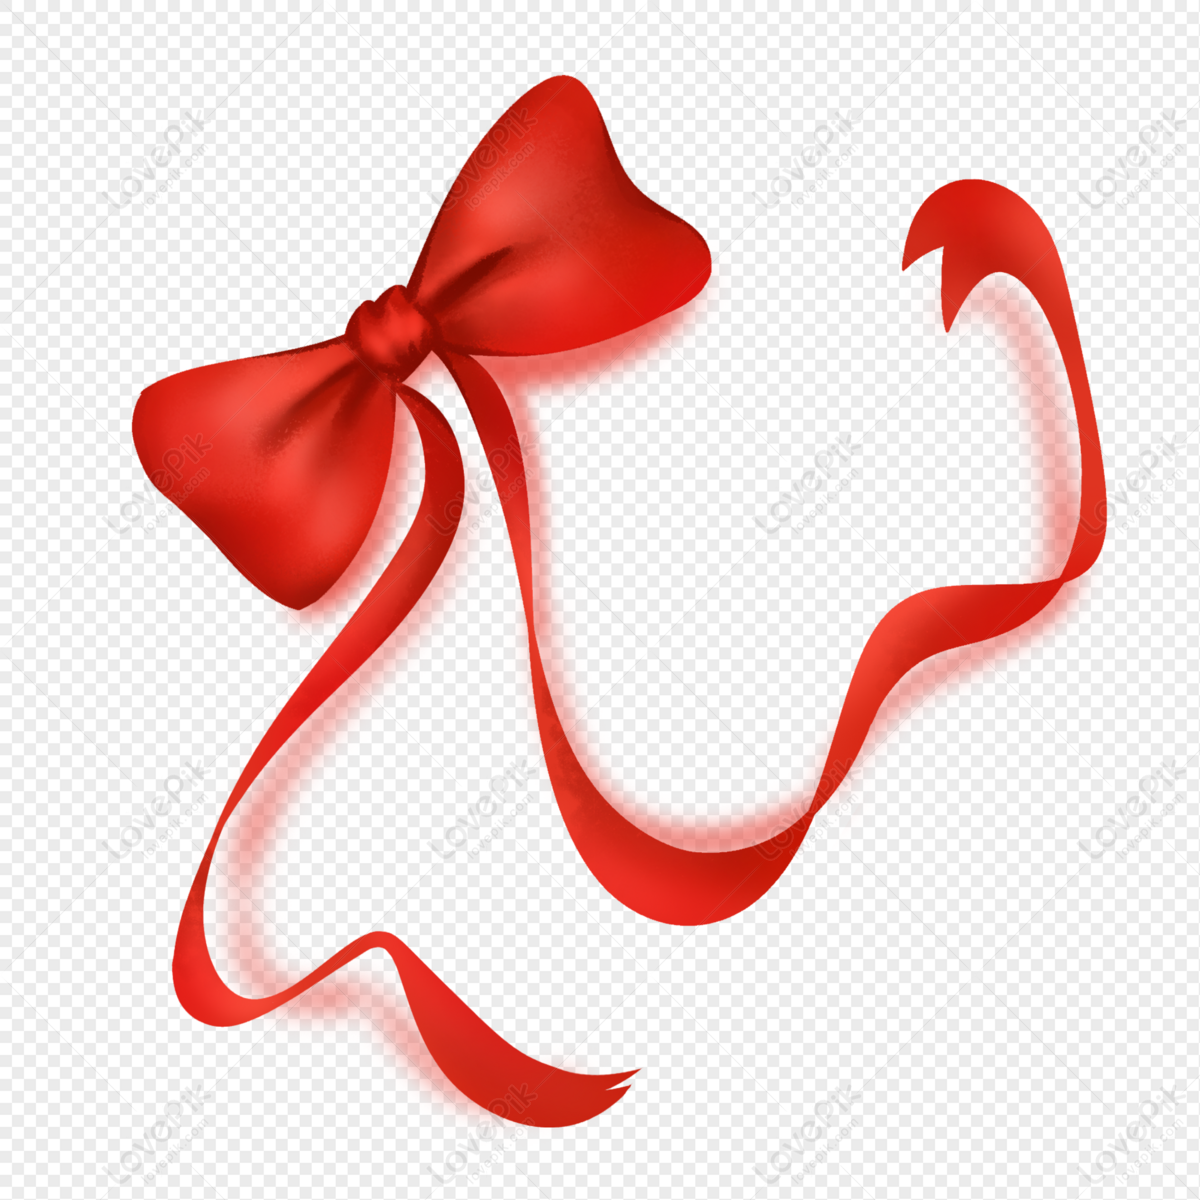 Chiếc nơ đỏ lớn là một phần cần thiết cho bất kỳ gói quà nào, và Big Red Bow Ribbon PNG chất lượng cao này sẽ giúp chiếc nơ đó trở thành trung tâm của bất kỳ bức ảnh nào bạn đưa vào. Hãy bấm vào hình ảnh liên quan để tải về ngay hôm nay!